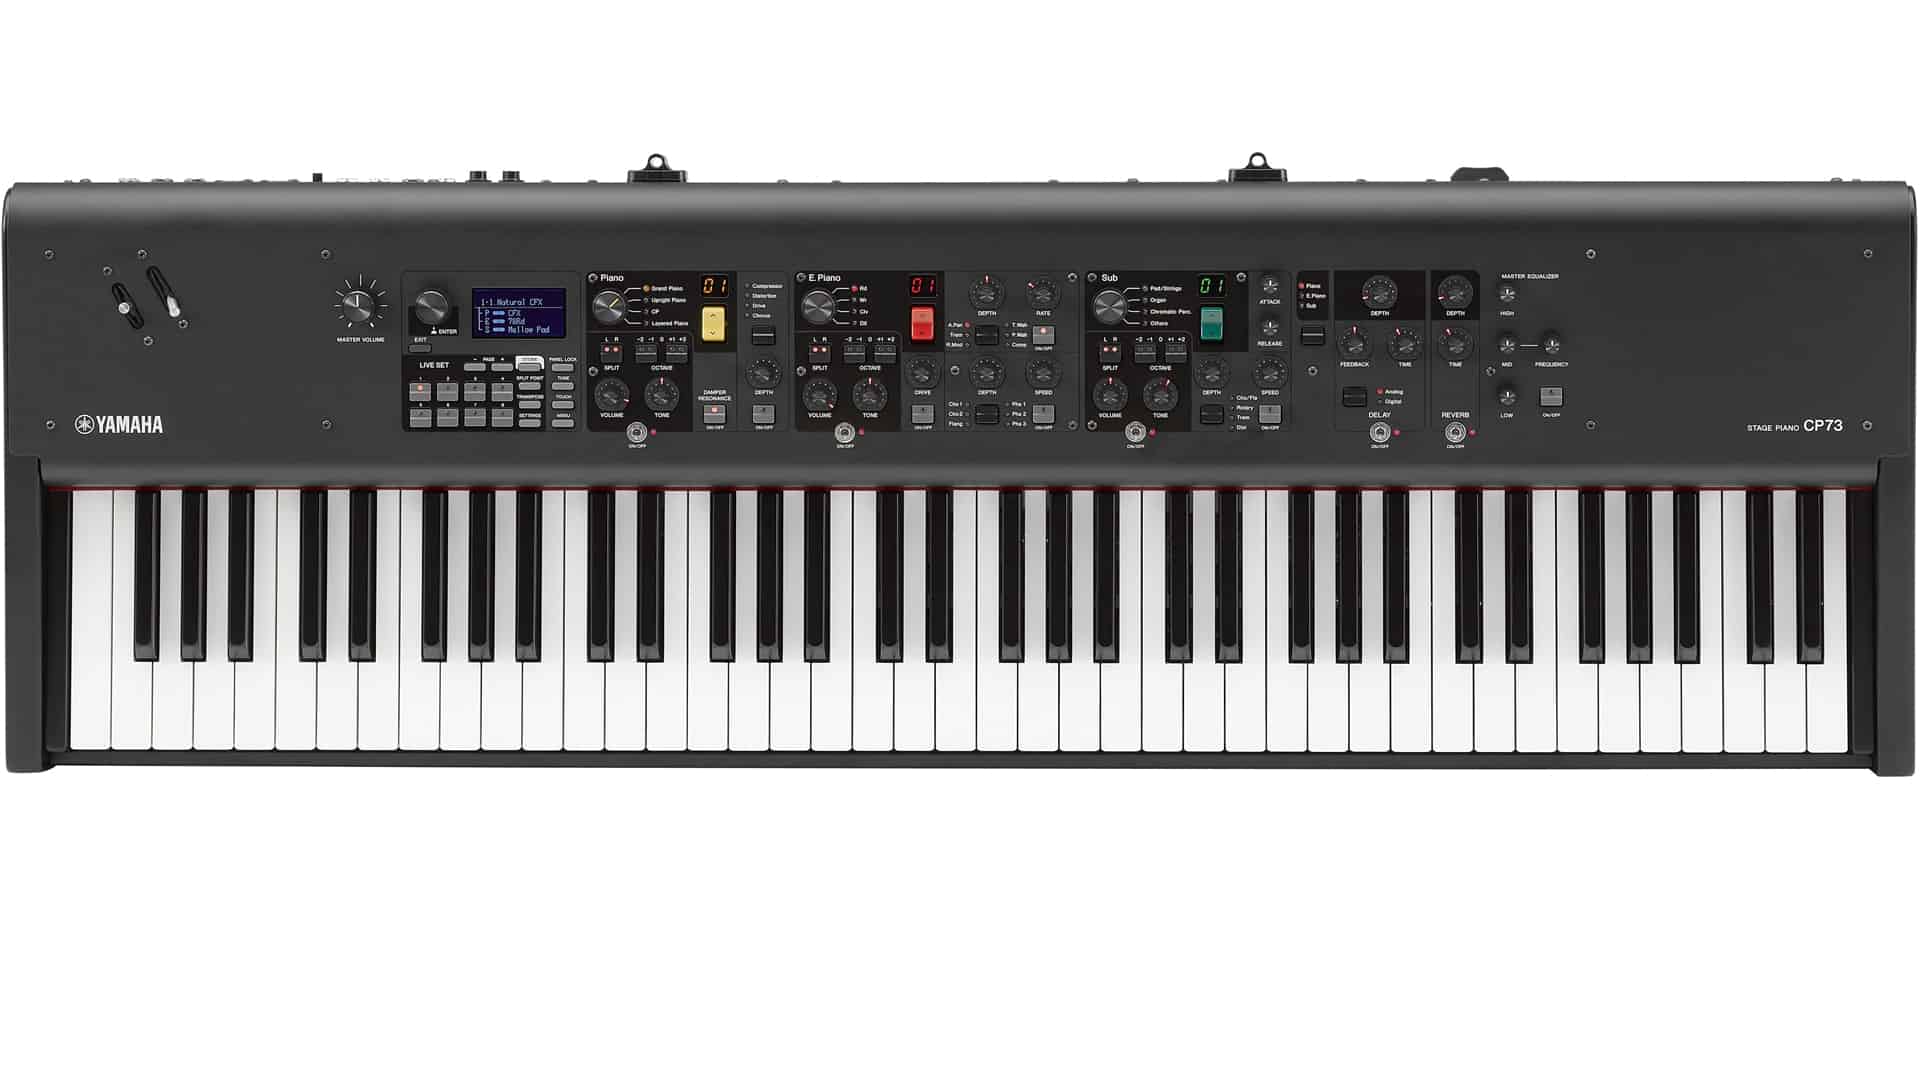 Großes Einsteiger-Keyboard in Stage Piano-Optik mit 88 Tasten und vielen Sounds 